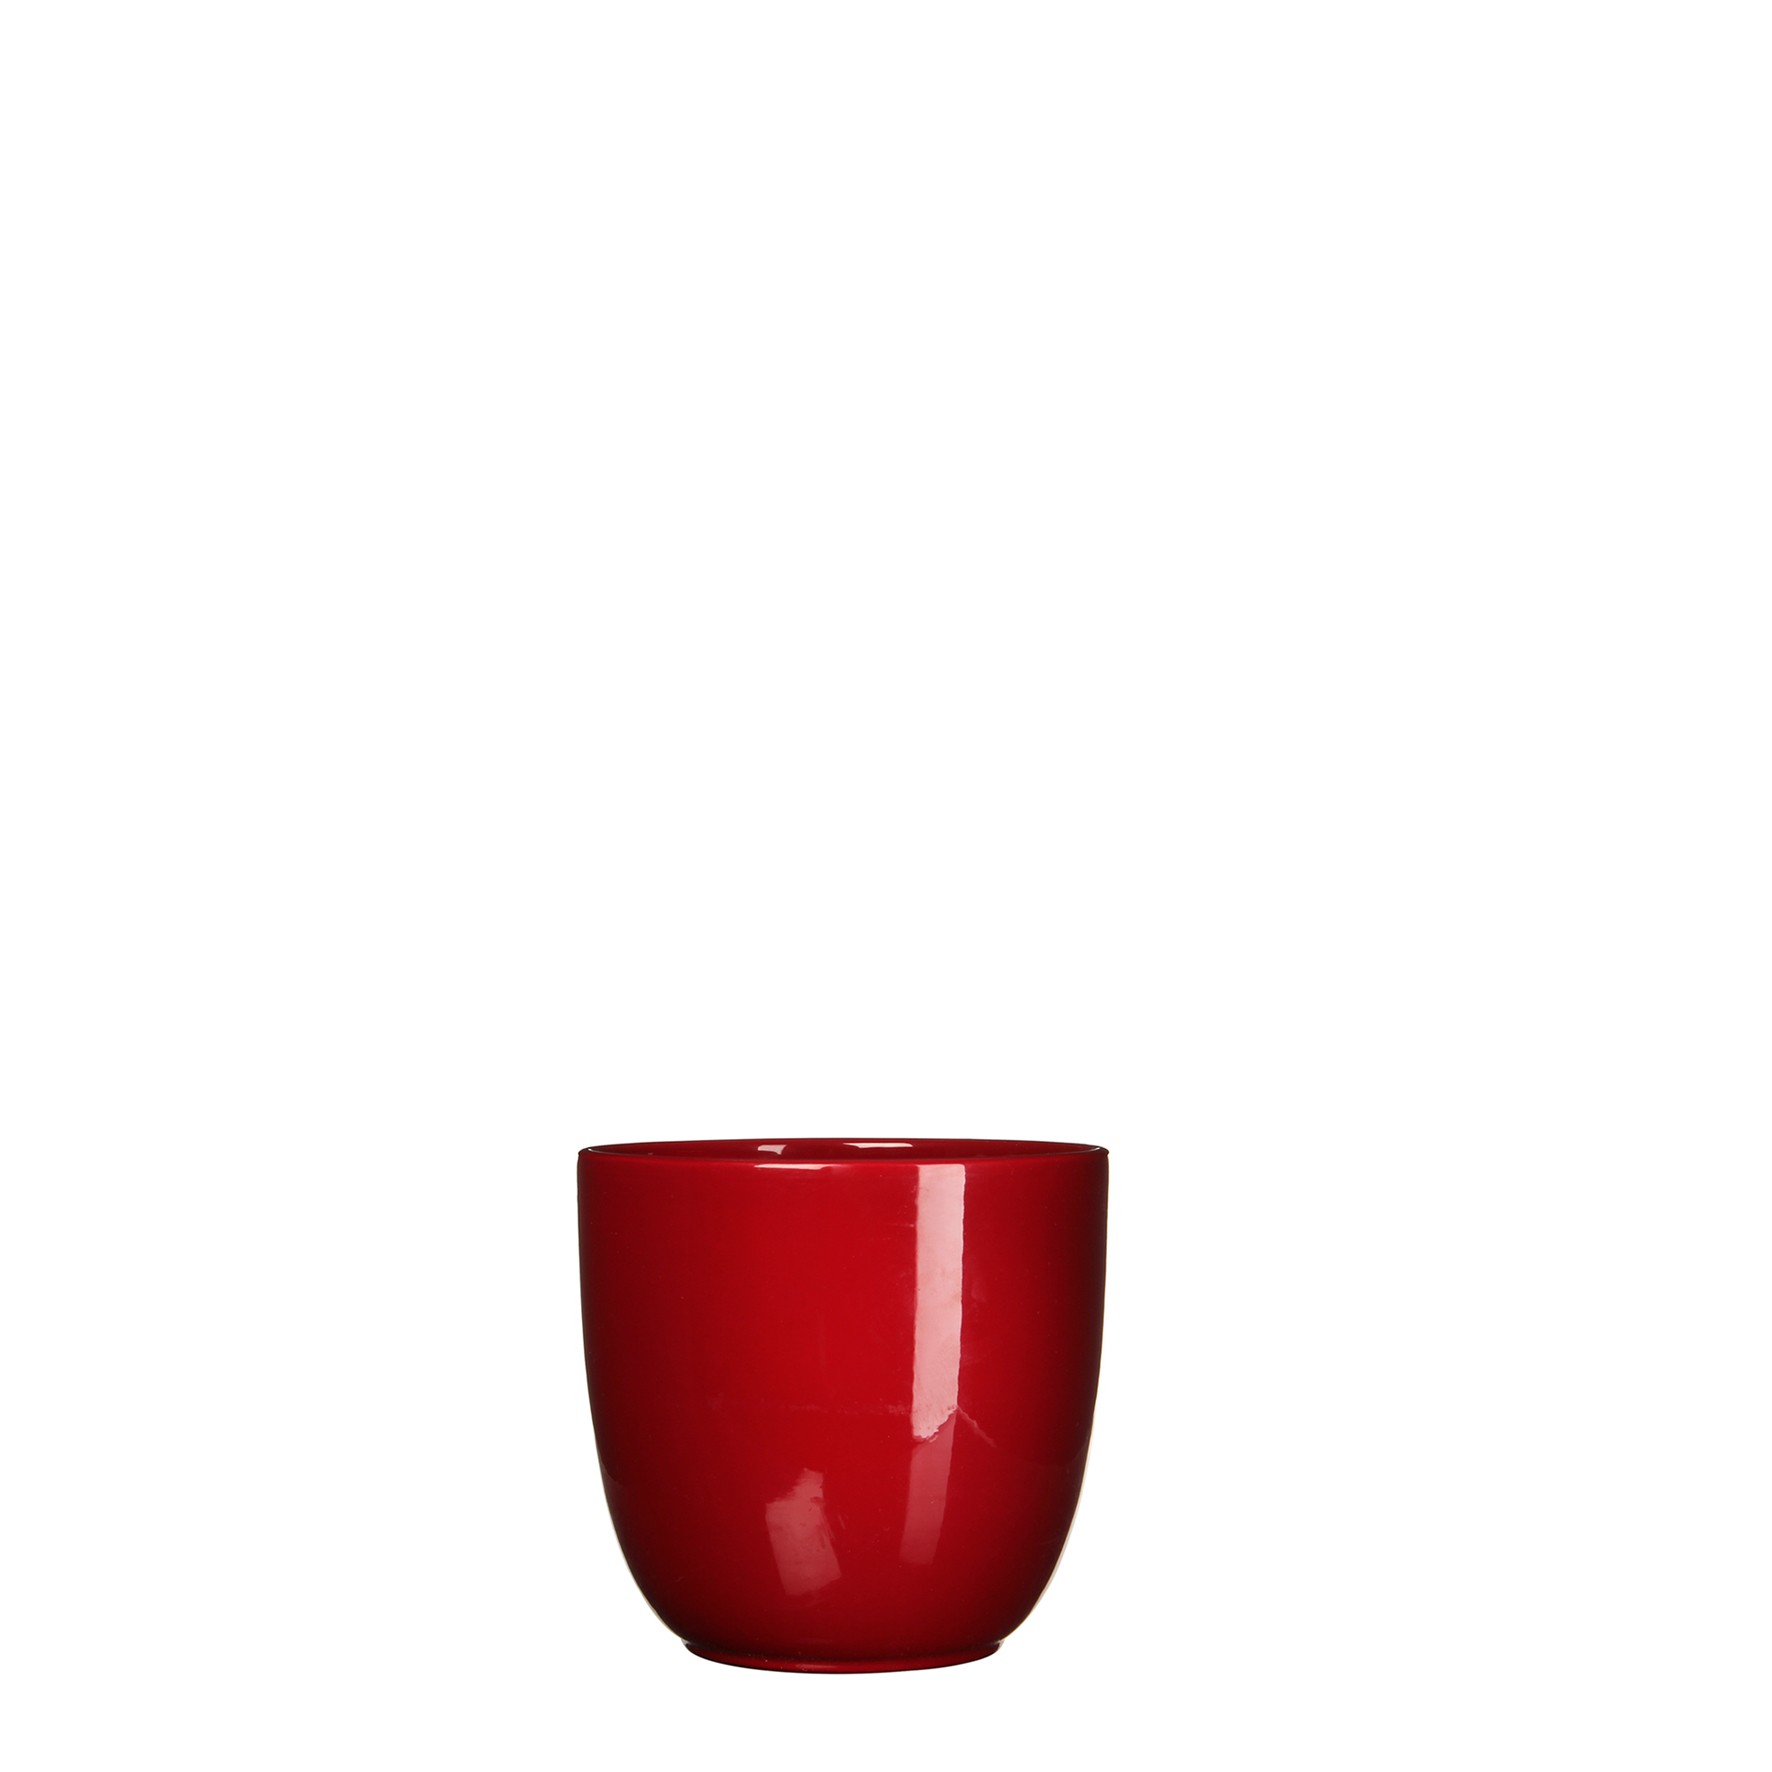 Bloempot Pot rond es/9 tusca 9 x 10 cm d.rood Mica - Mica Decorations